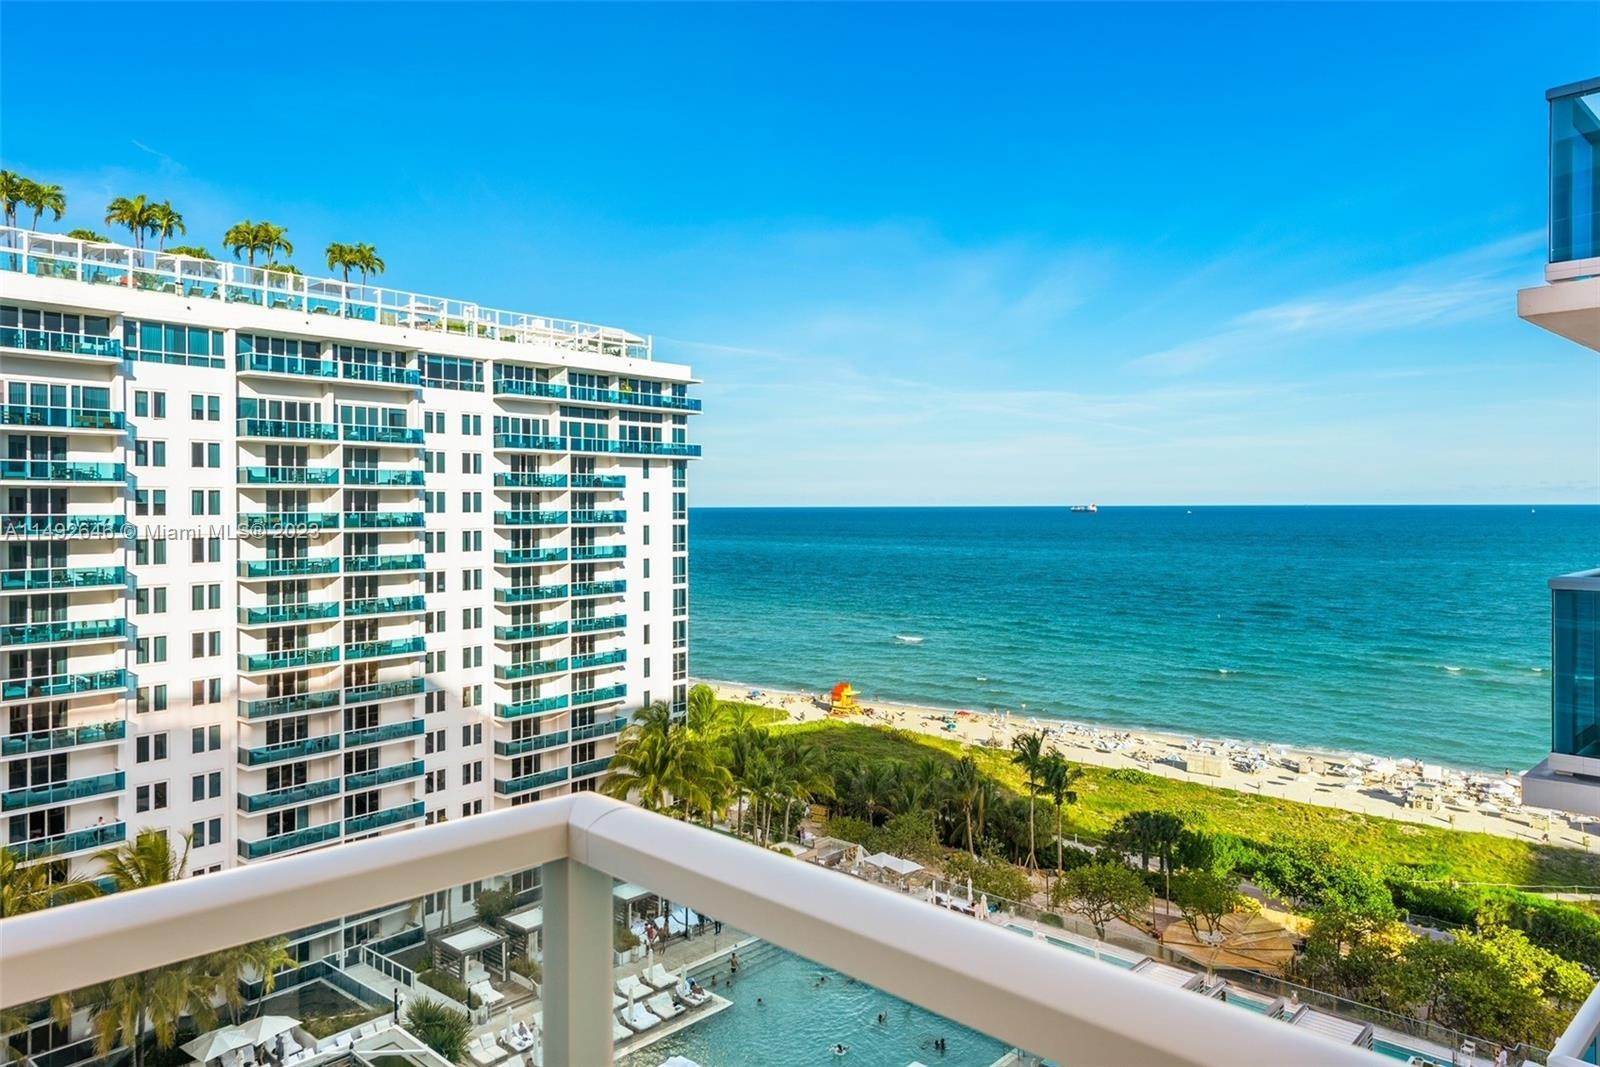 公寓 为 销售 在 Mid Beach, 迈阿密海滩, FL 33139